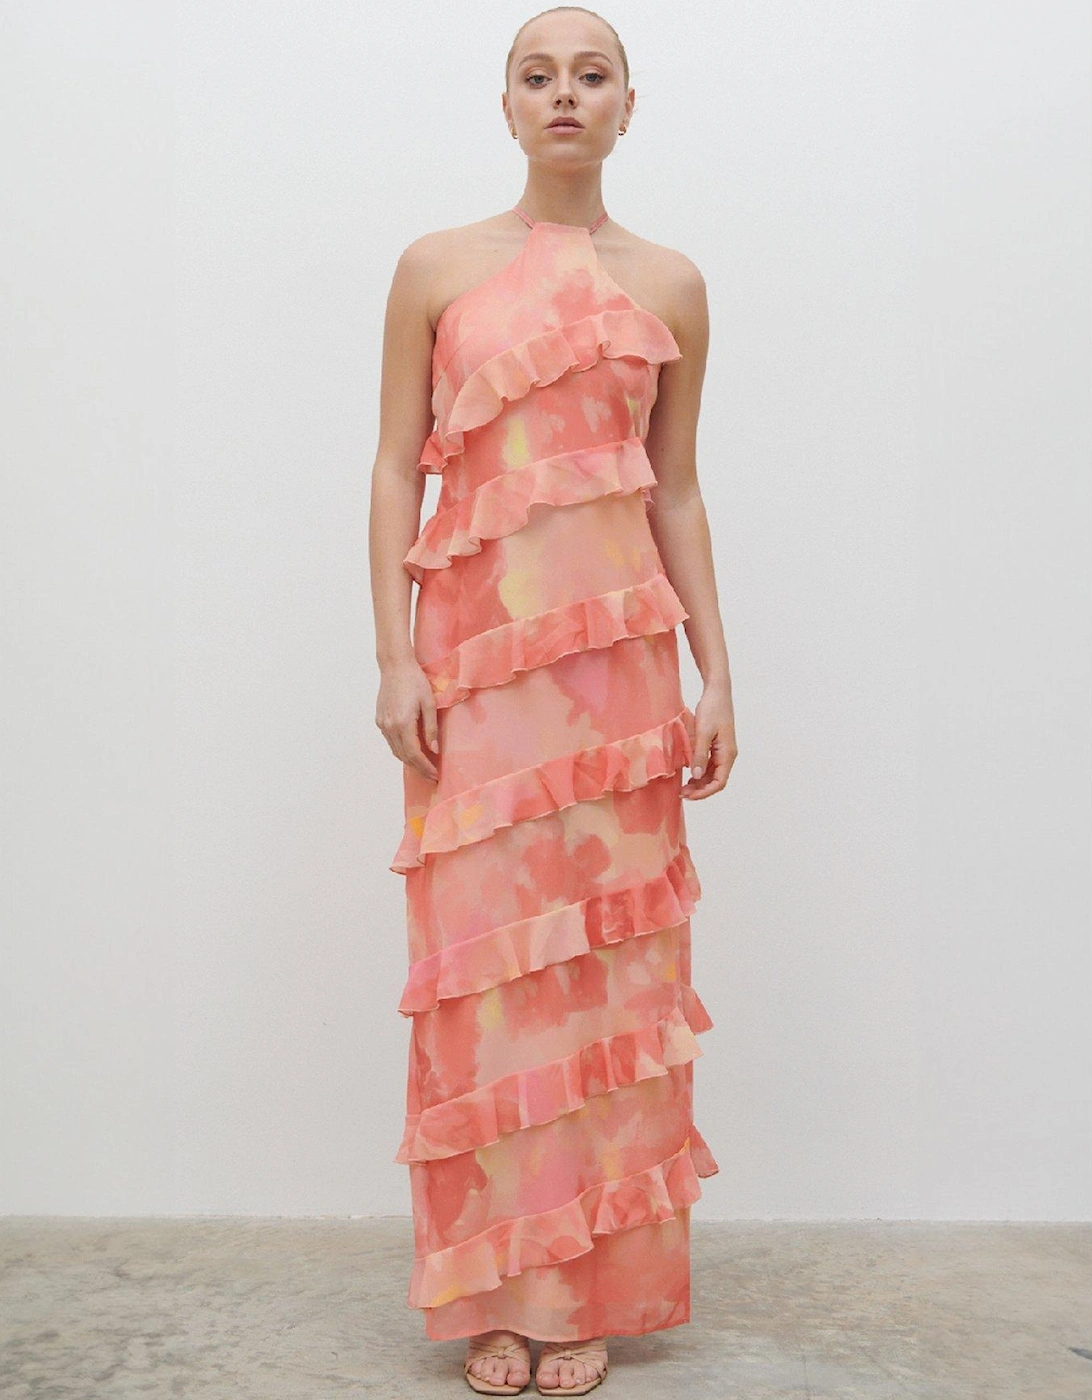 Katy Printed Ruffle Maxi Dress - Pink, 2 of 1